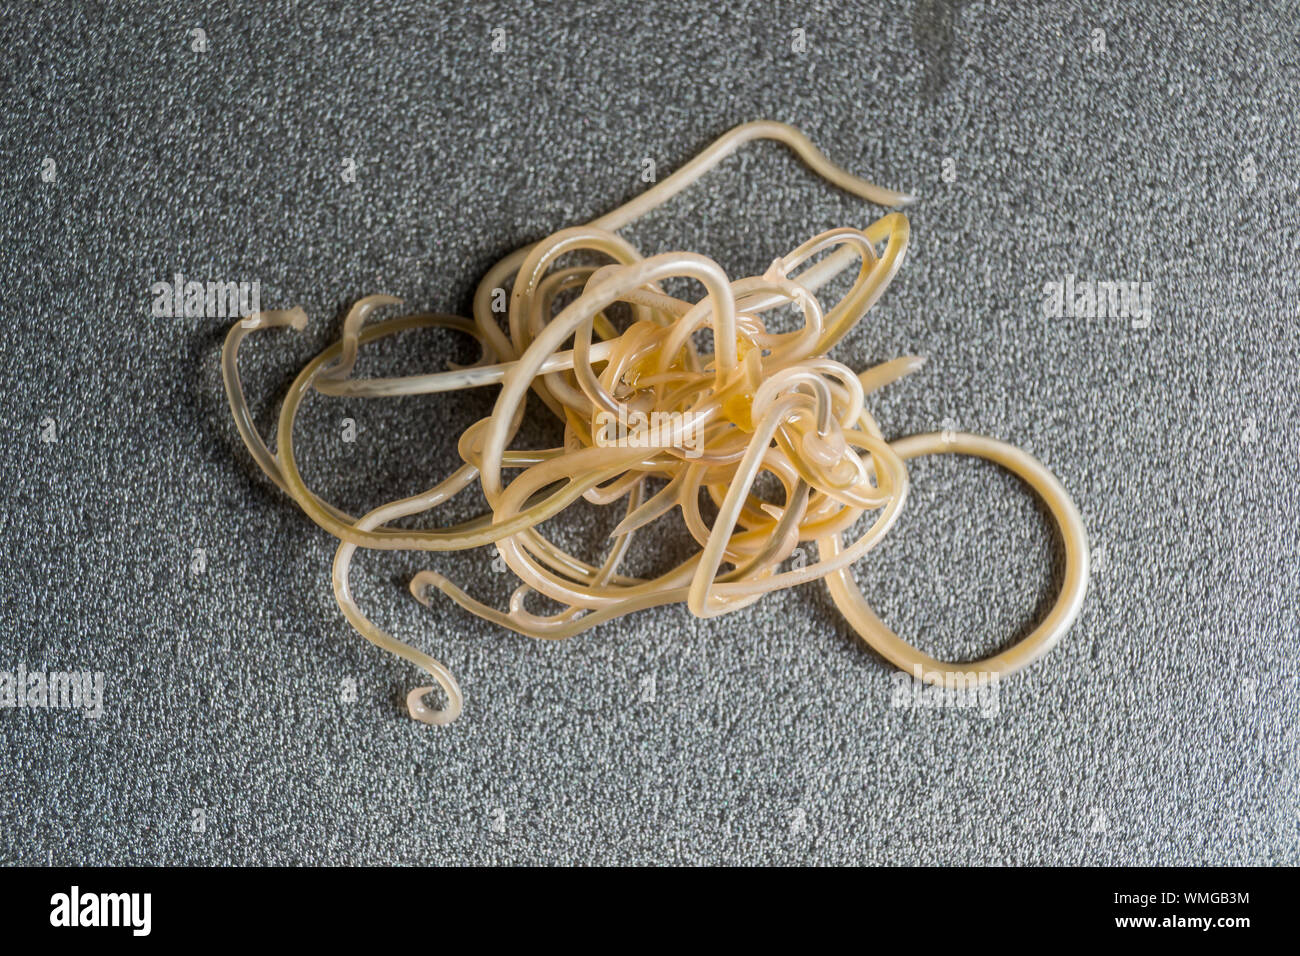 Nahaufnahme von Toxocara cati. Spulwürmer aus einer Katze Stockfotografie -  Alamy